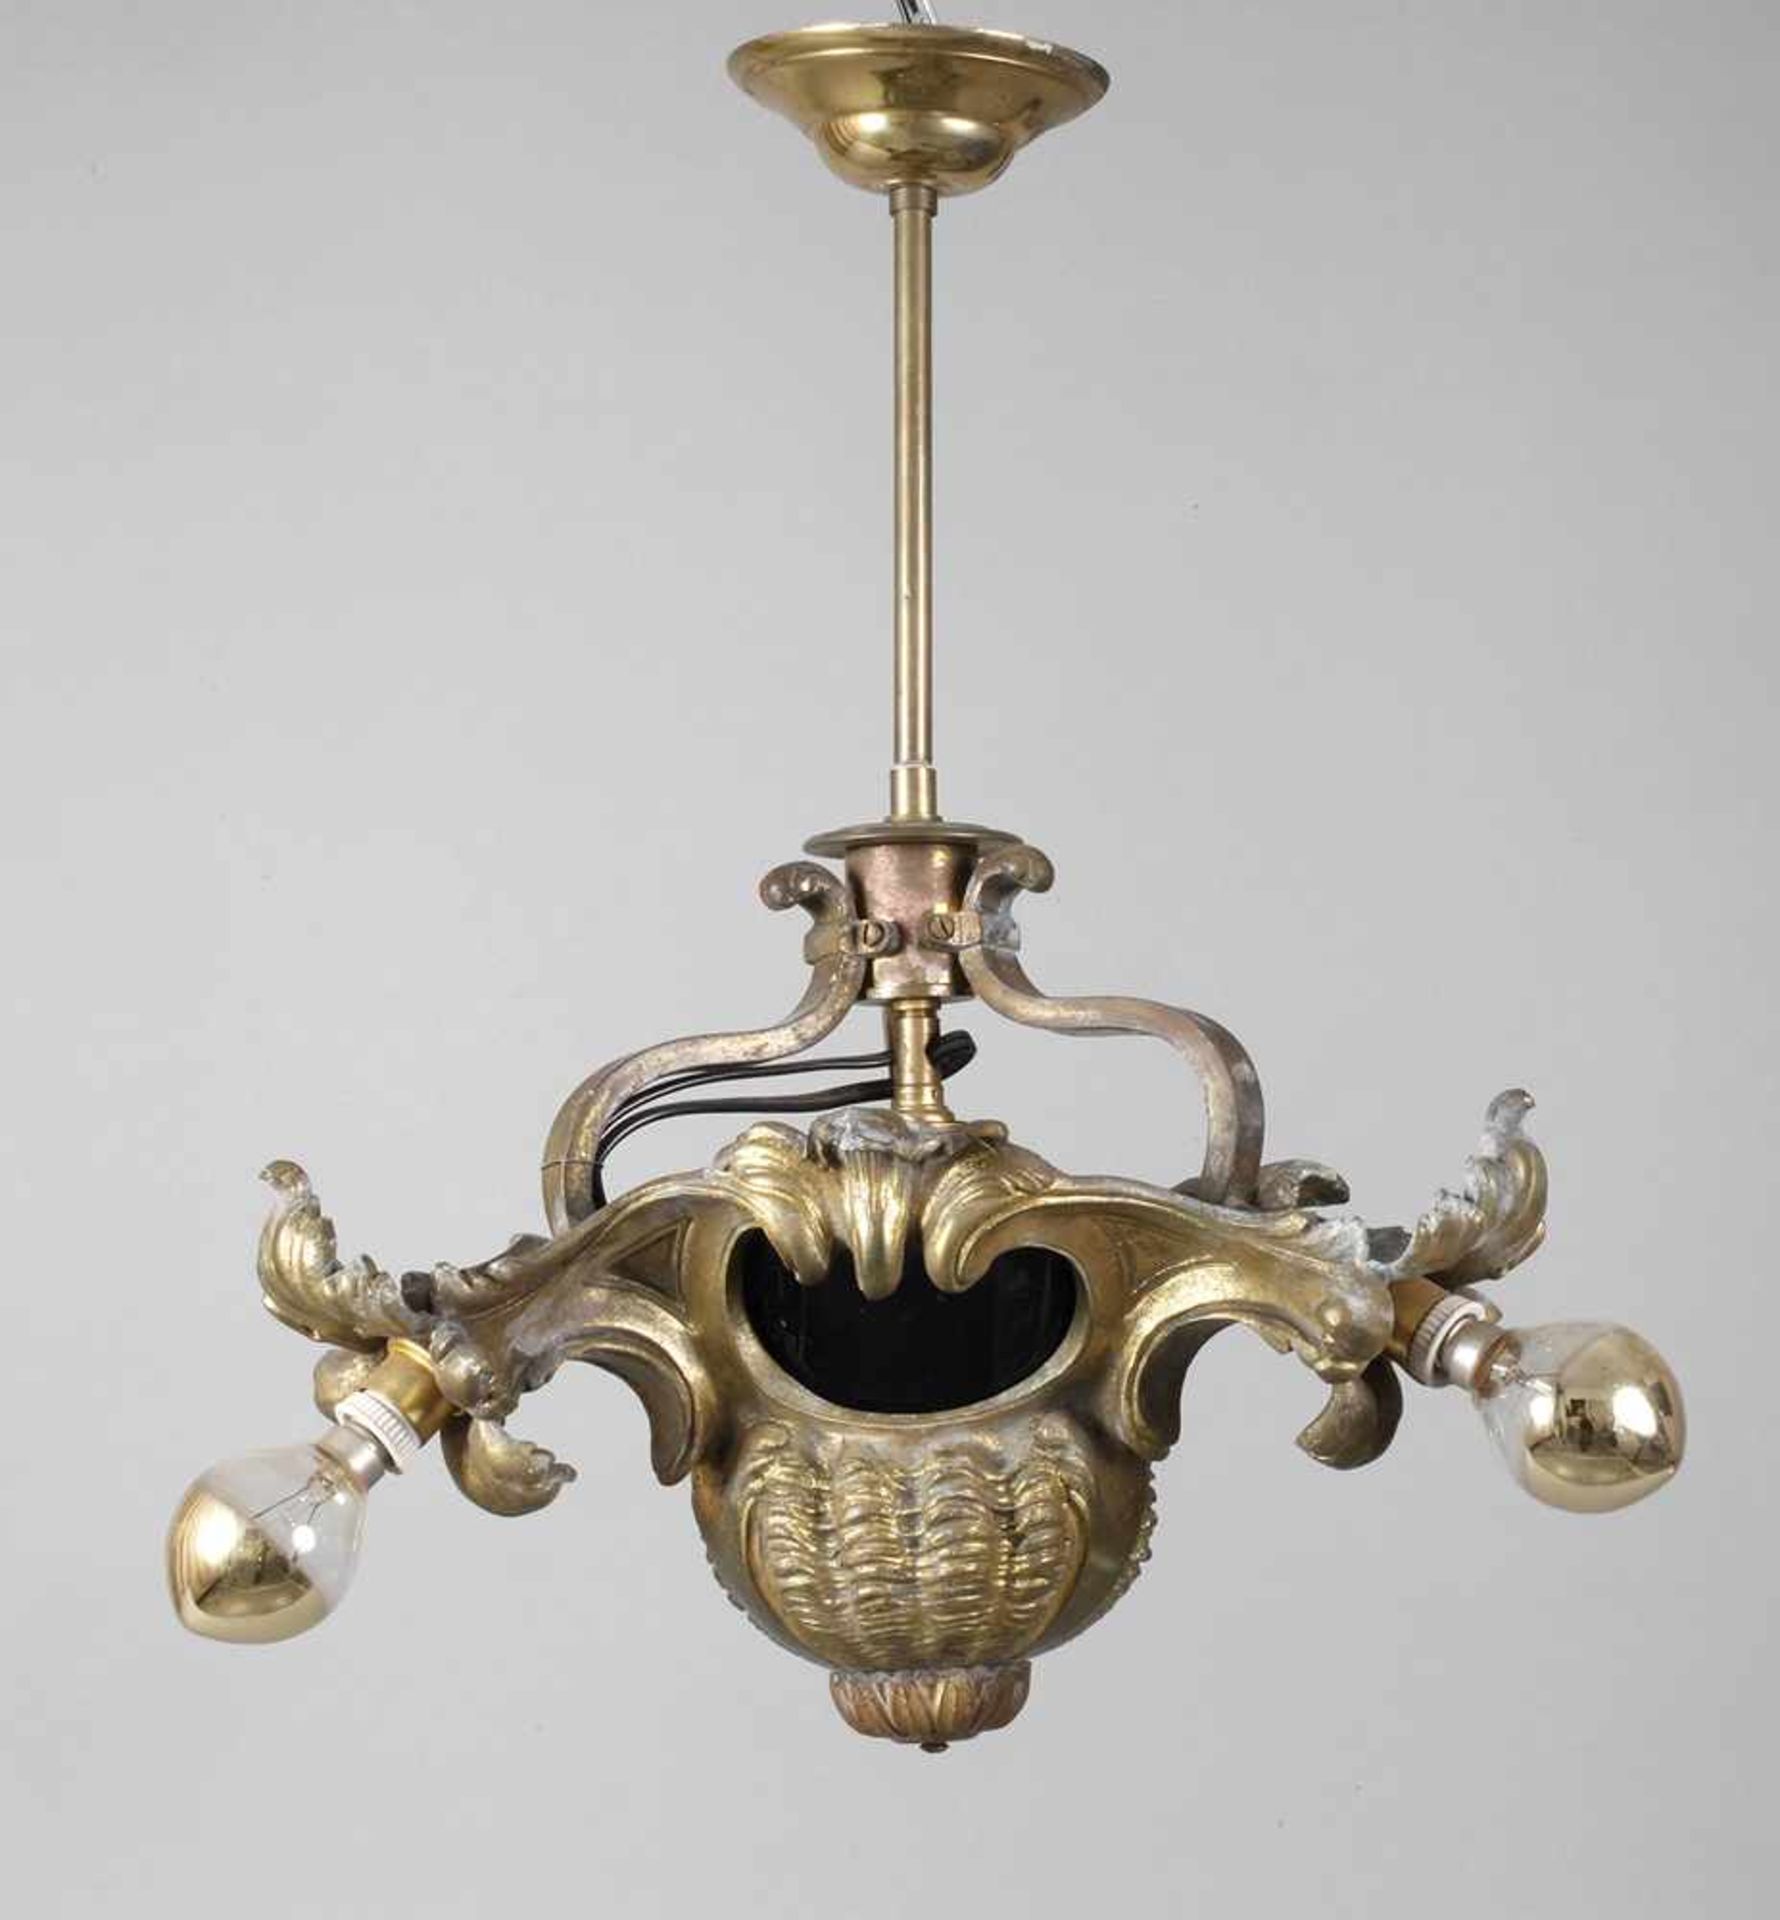 Kleine Deckenlampeum 1900, Bronze vergoldet, von Rocaillen gesäumtes, balusterartiges Gehäuse mit